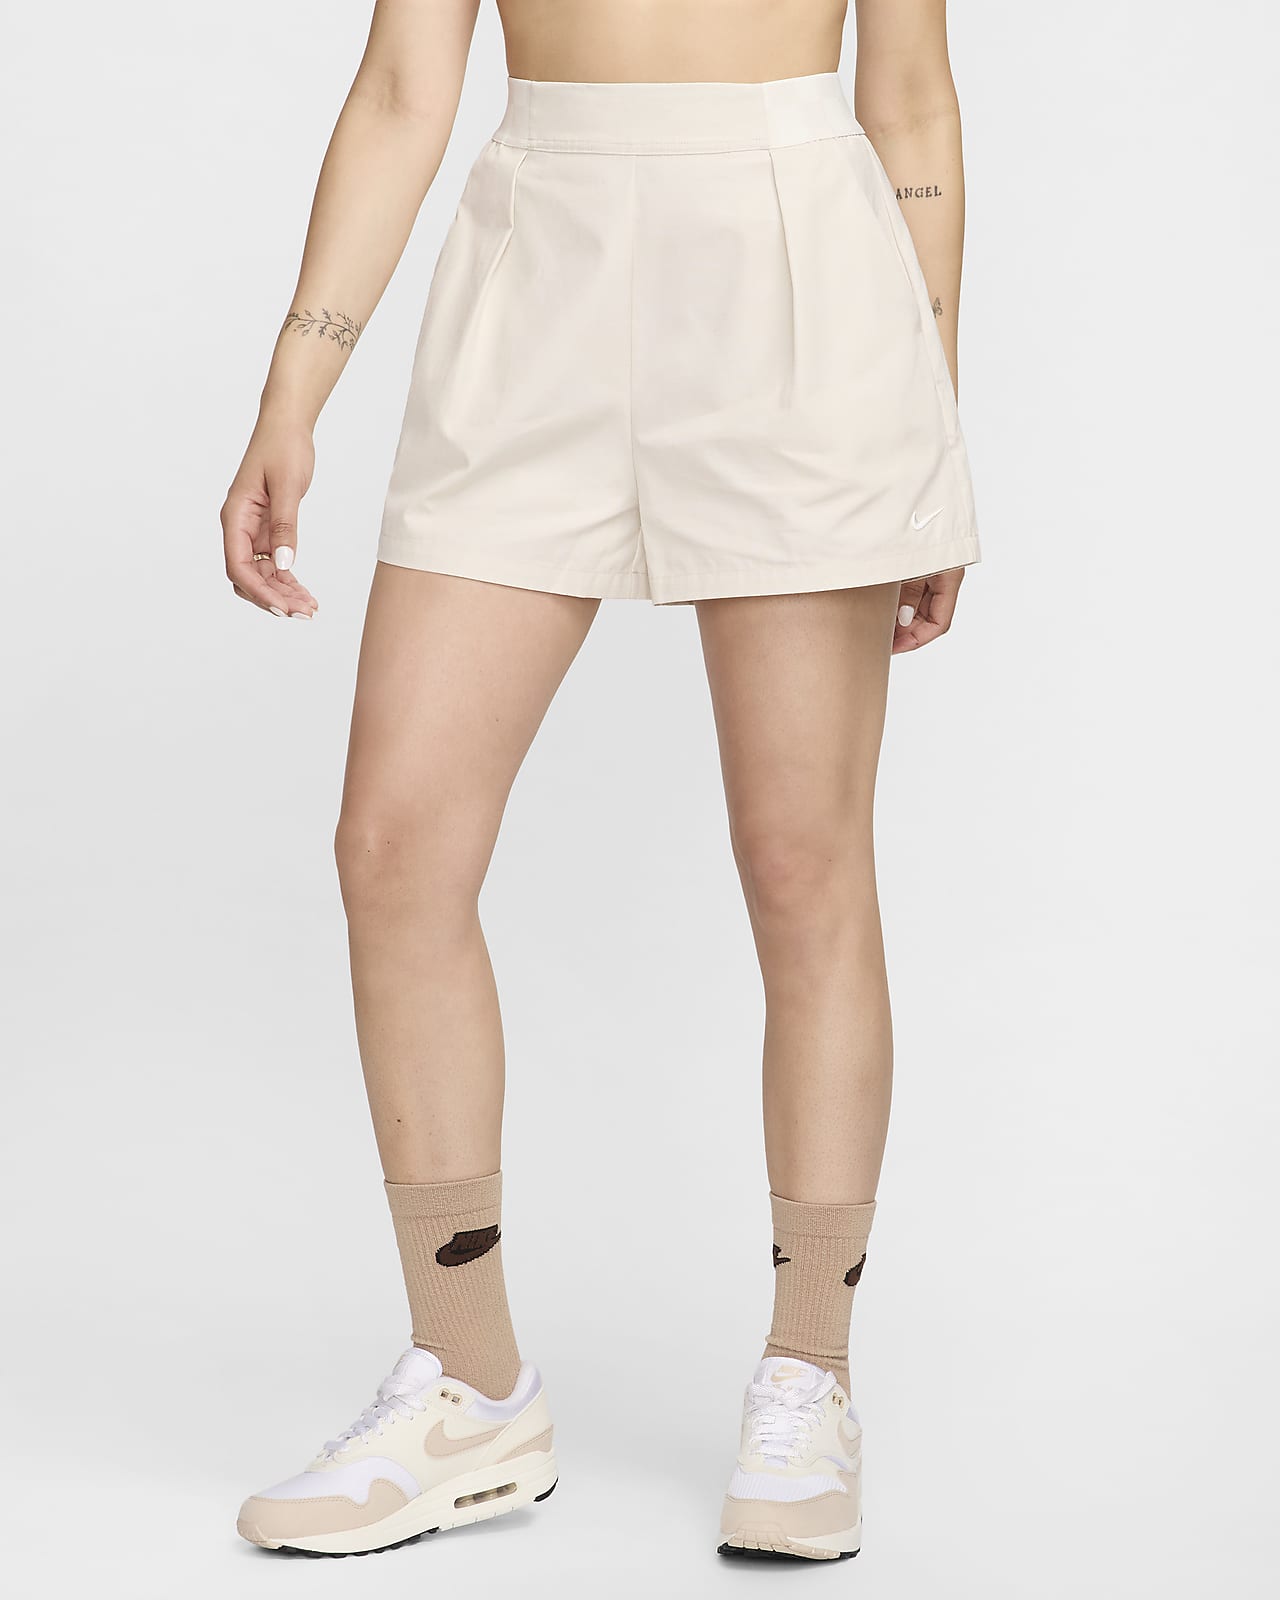 Nike Sportswear Collection Yüksek Belli 8 cm Pantolon Tarzı Kadın Şortu